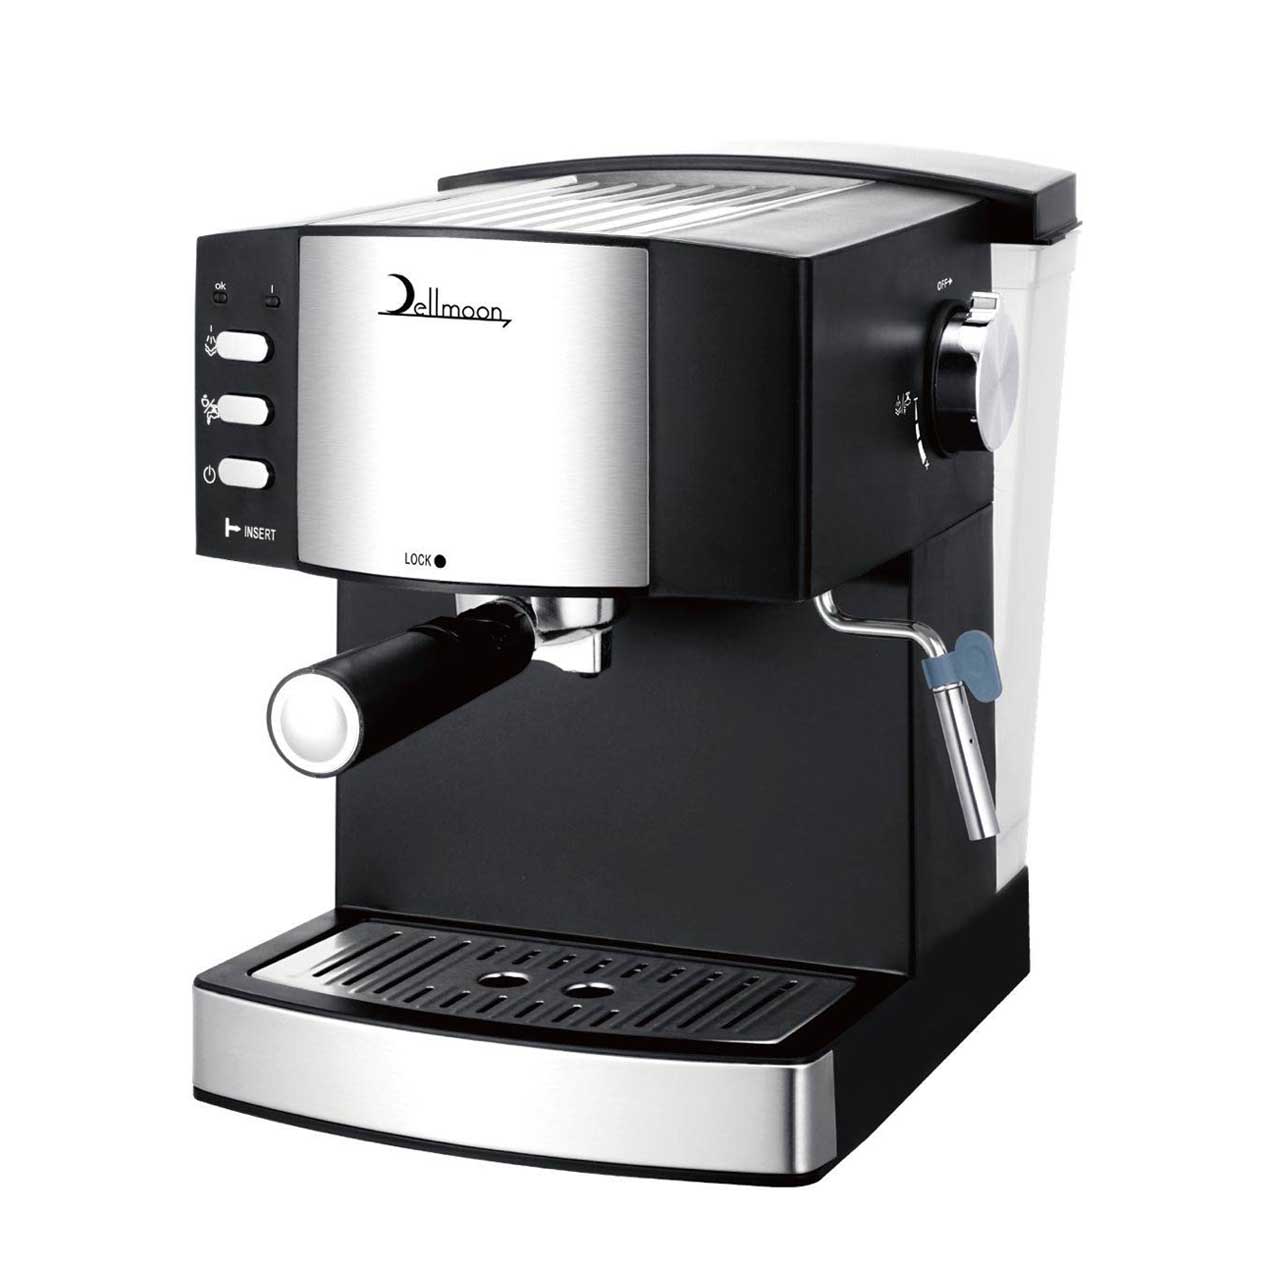 Dellmoon Coffee Maker  6886